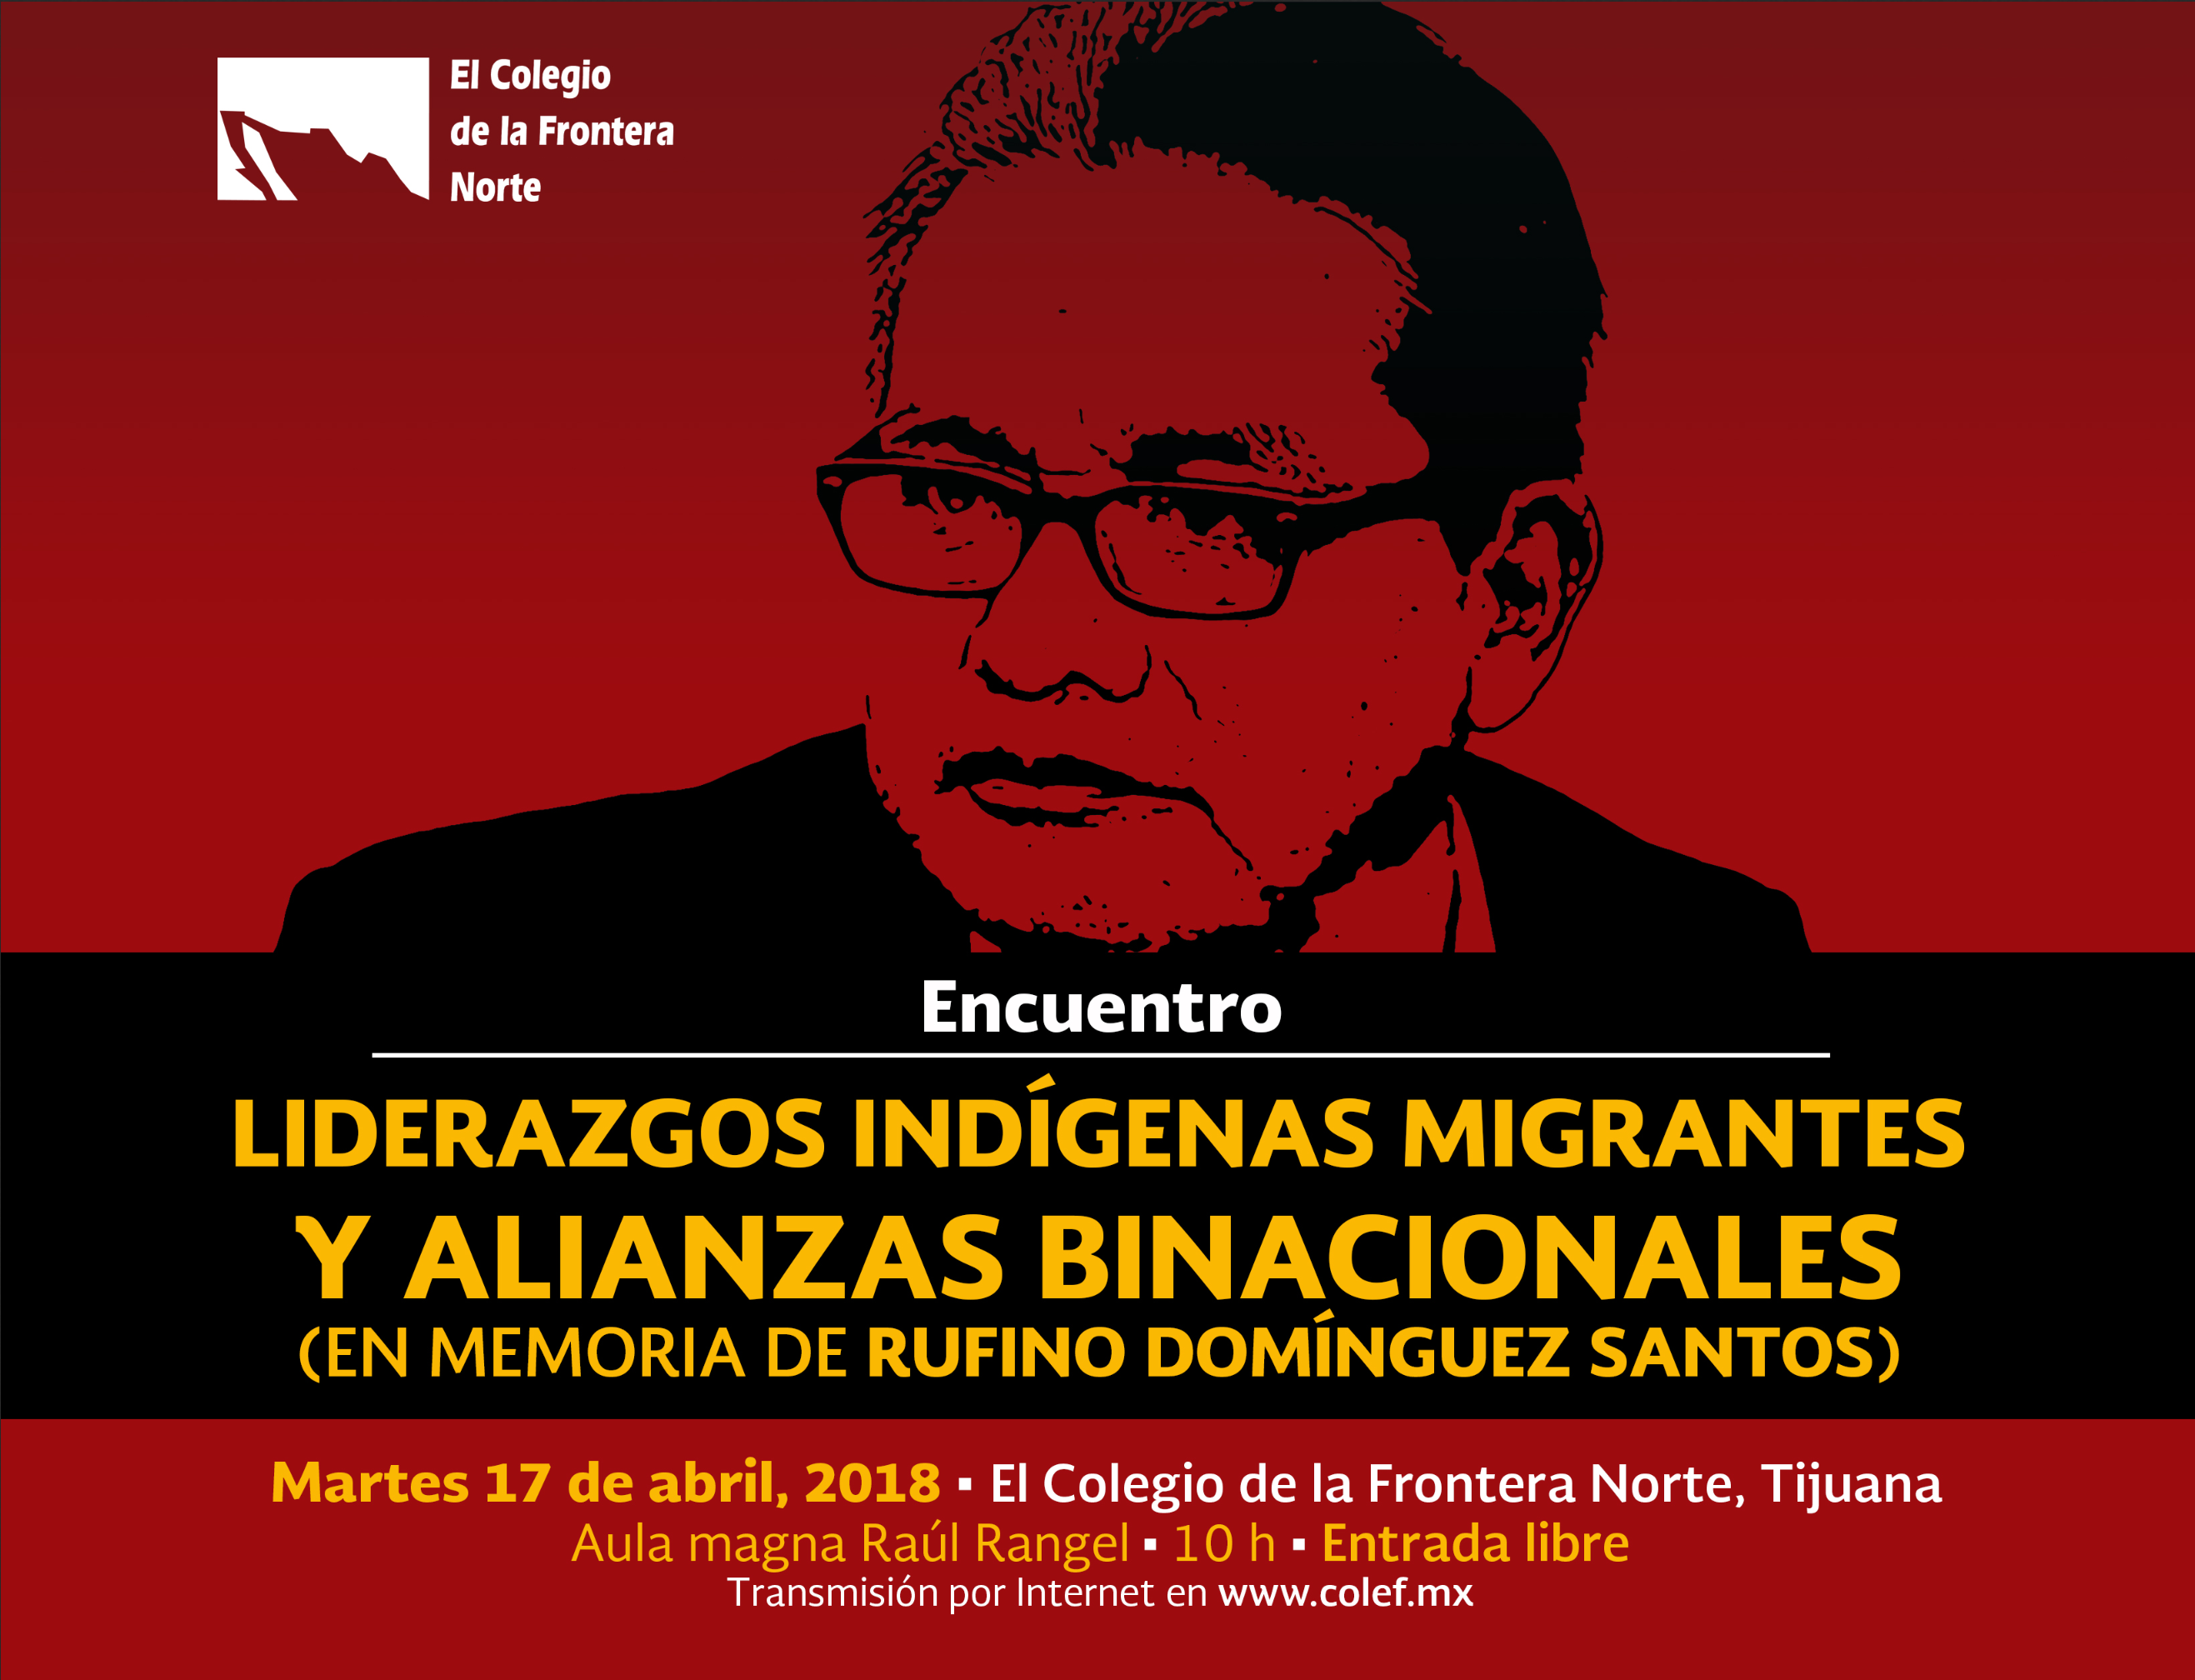 [INVITACIÓN] Encuentro "Liderazgos indígenas migrantes y alianzas binacionales" en memoria de Rufino Domínguez Santos